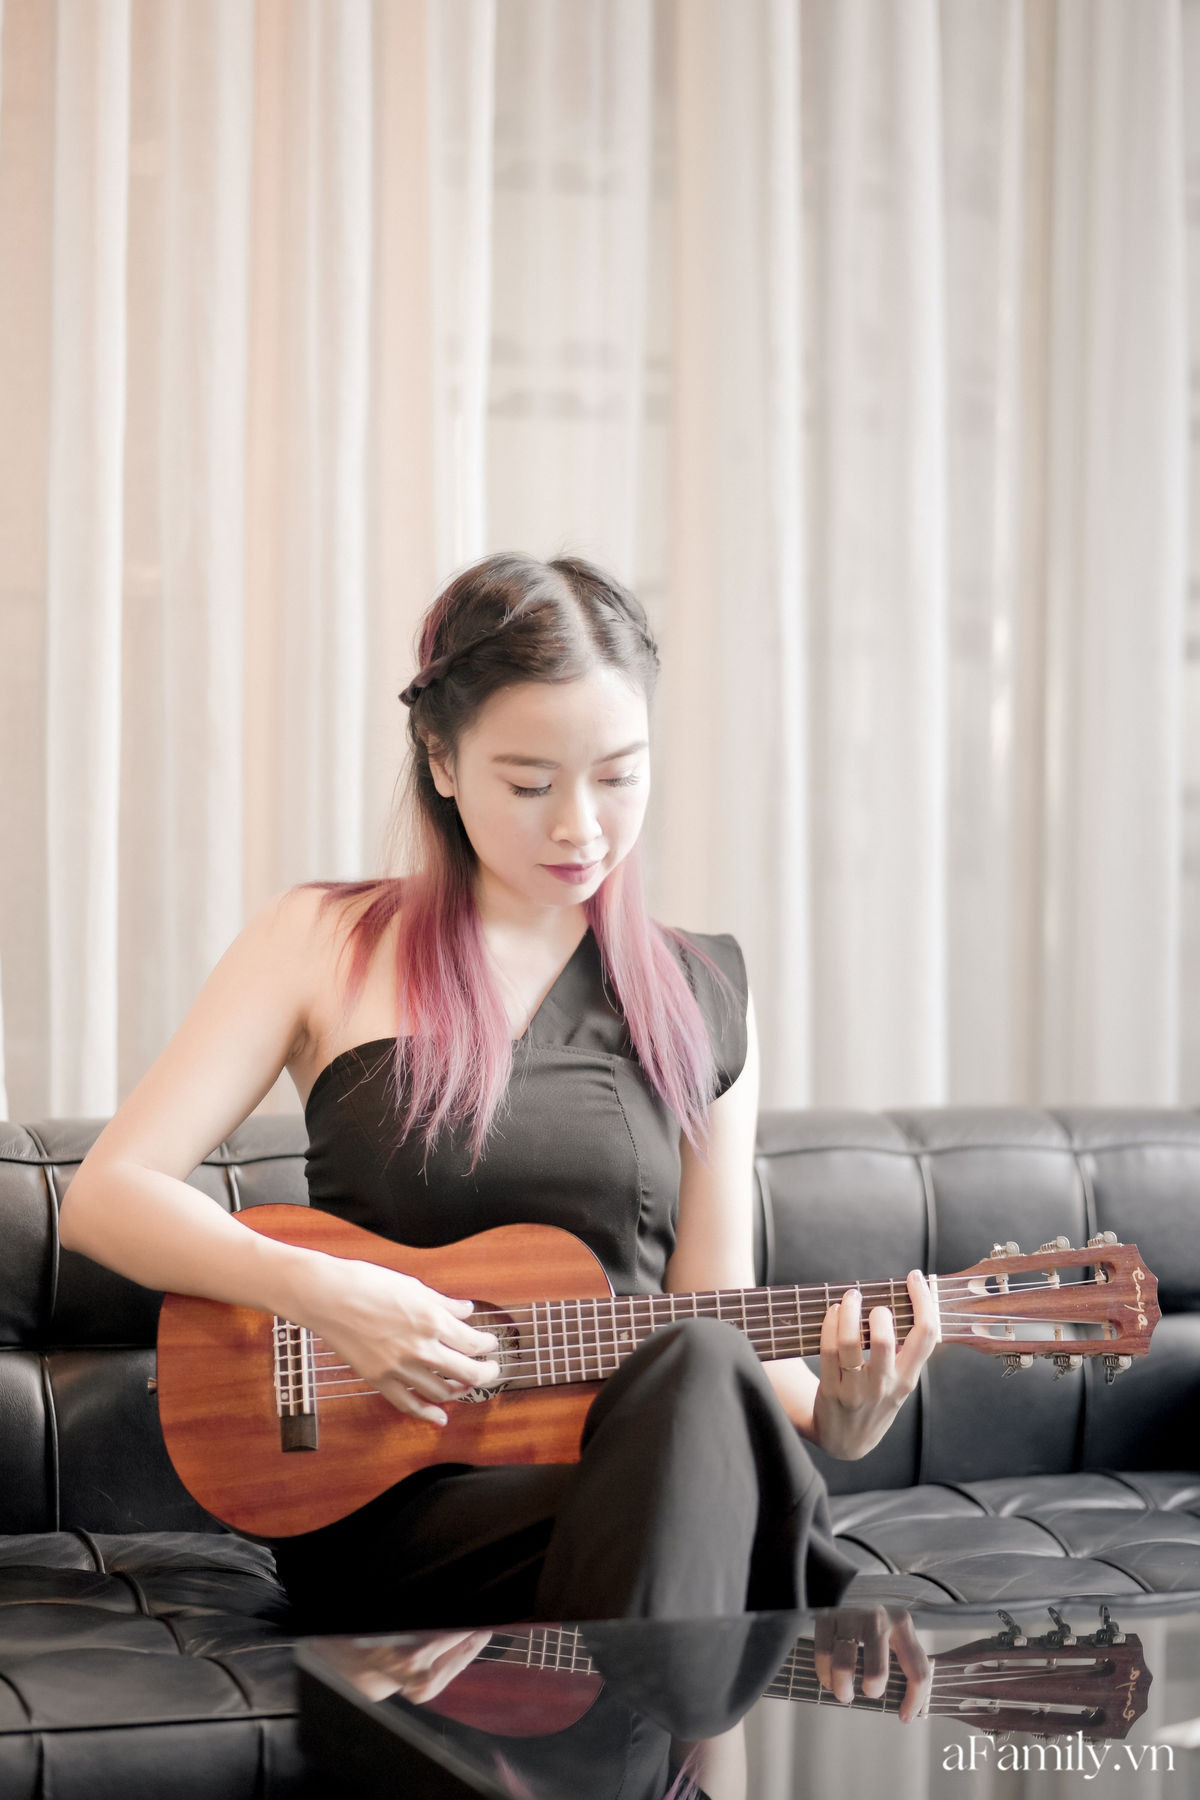 Đinh Khánh Ly: Từ một đứa trẻ trầm cảm trở thành cô giáo dạy đàn, là nhạc sĩ kiêm giám đốc thu nhập vài trăm triệu mỗi tháng tất cả đều là hành trình dài khó ai ngờ - Ảnh 2.